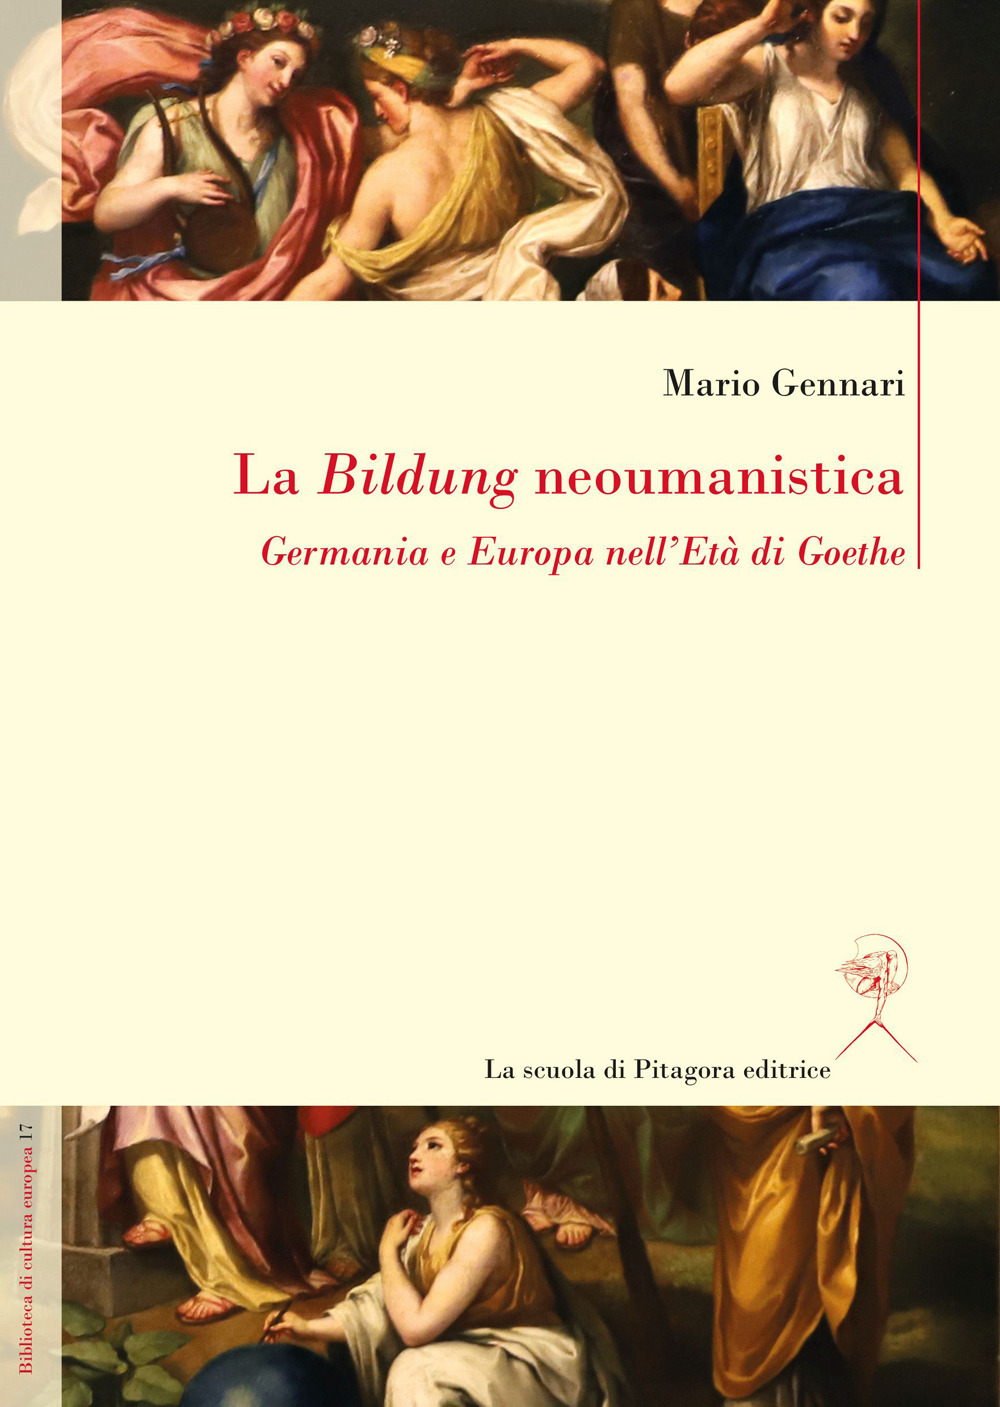 La Bildung neoumanistica. Germania e Europa nell'Età di Goethe